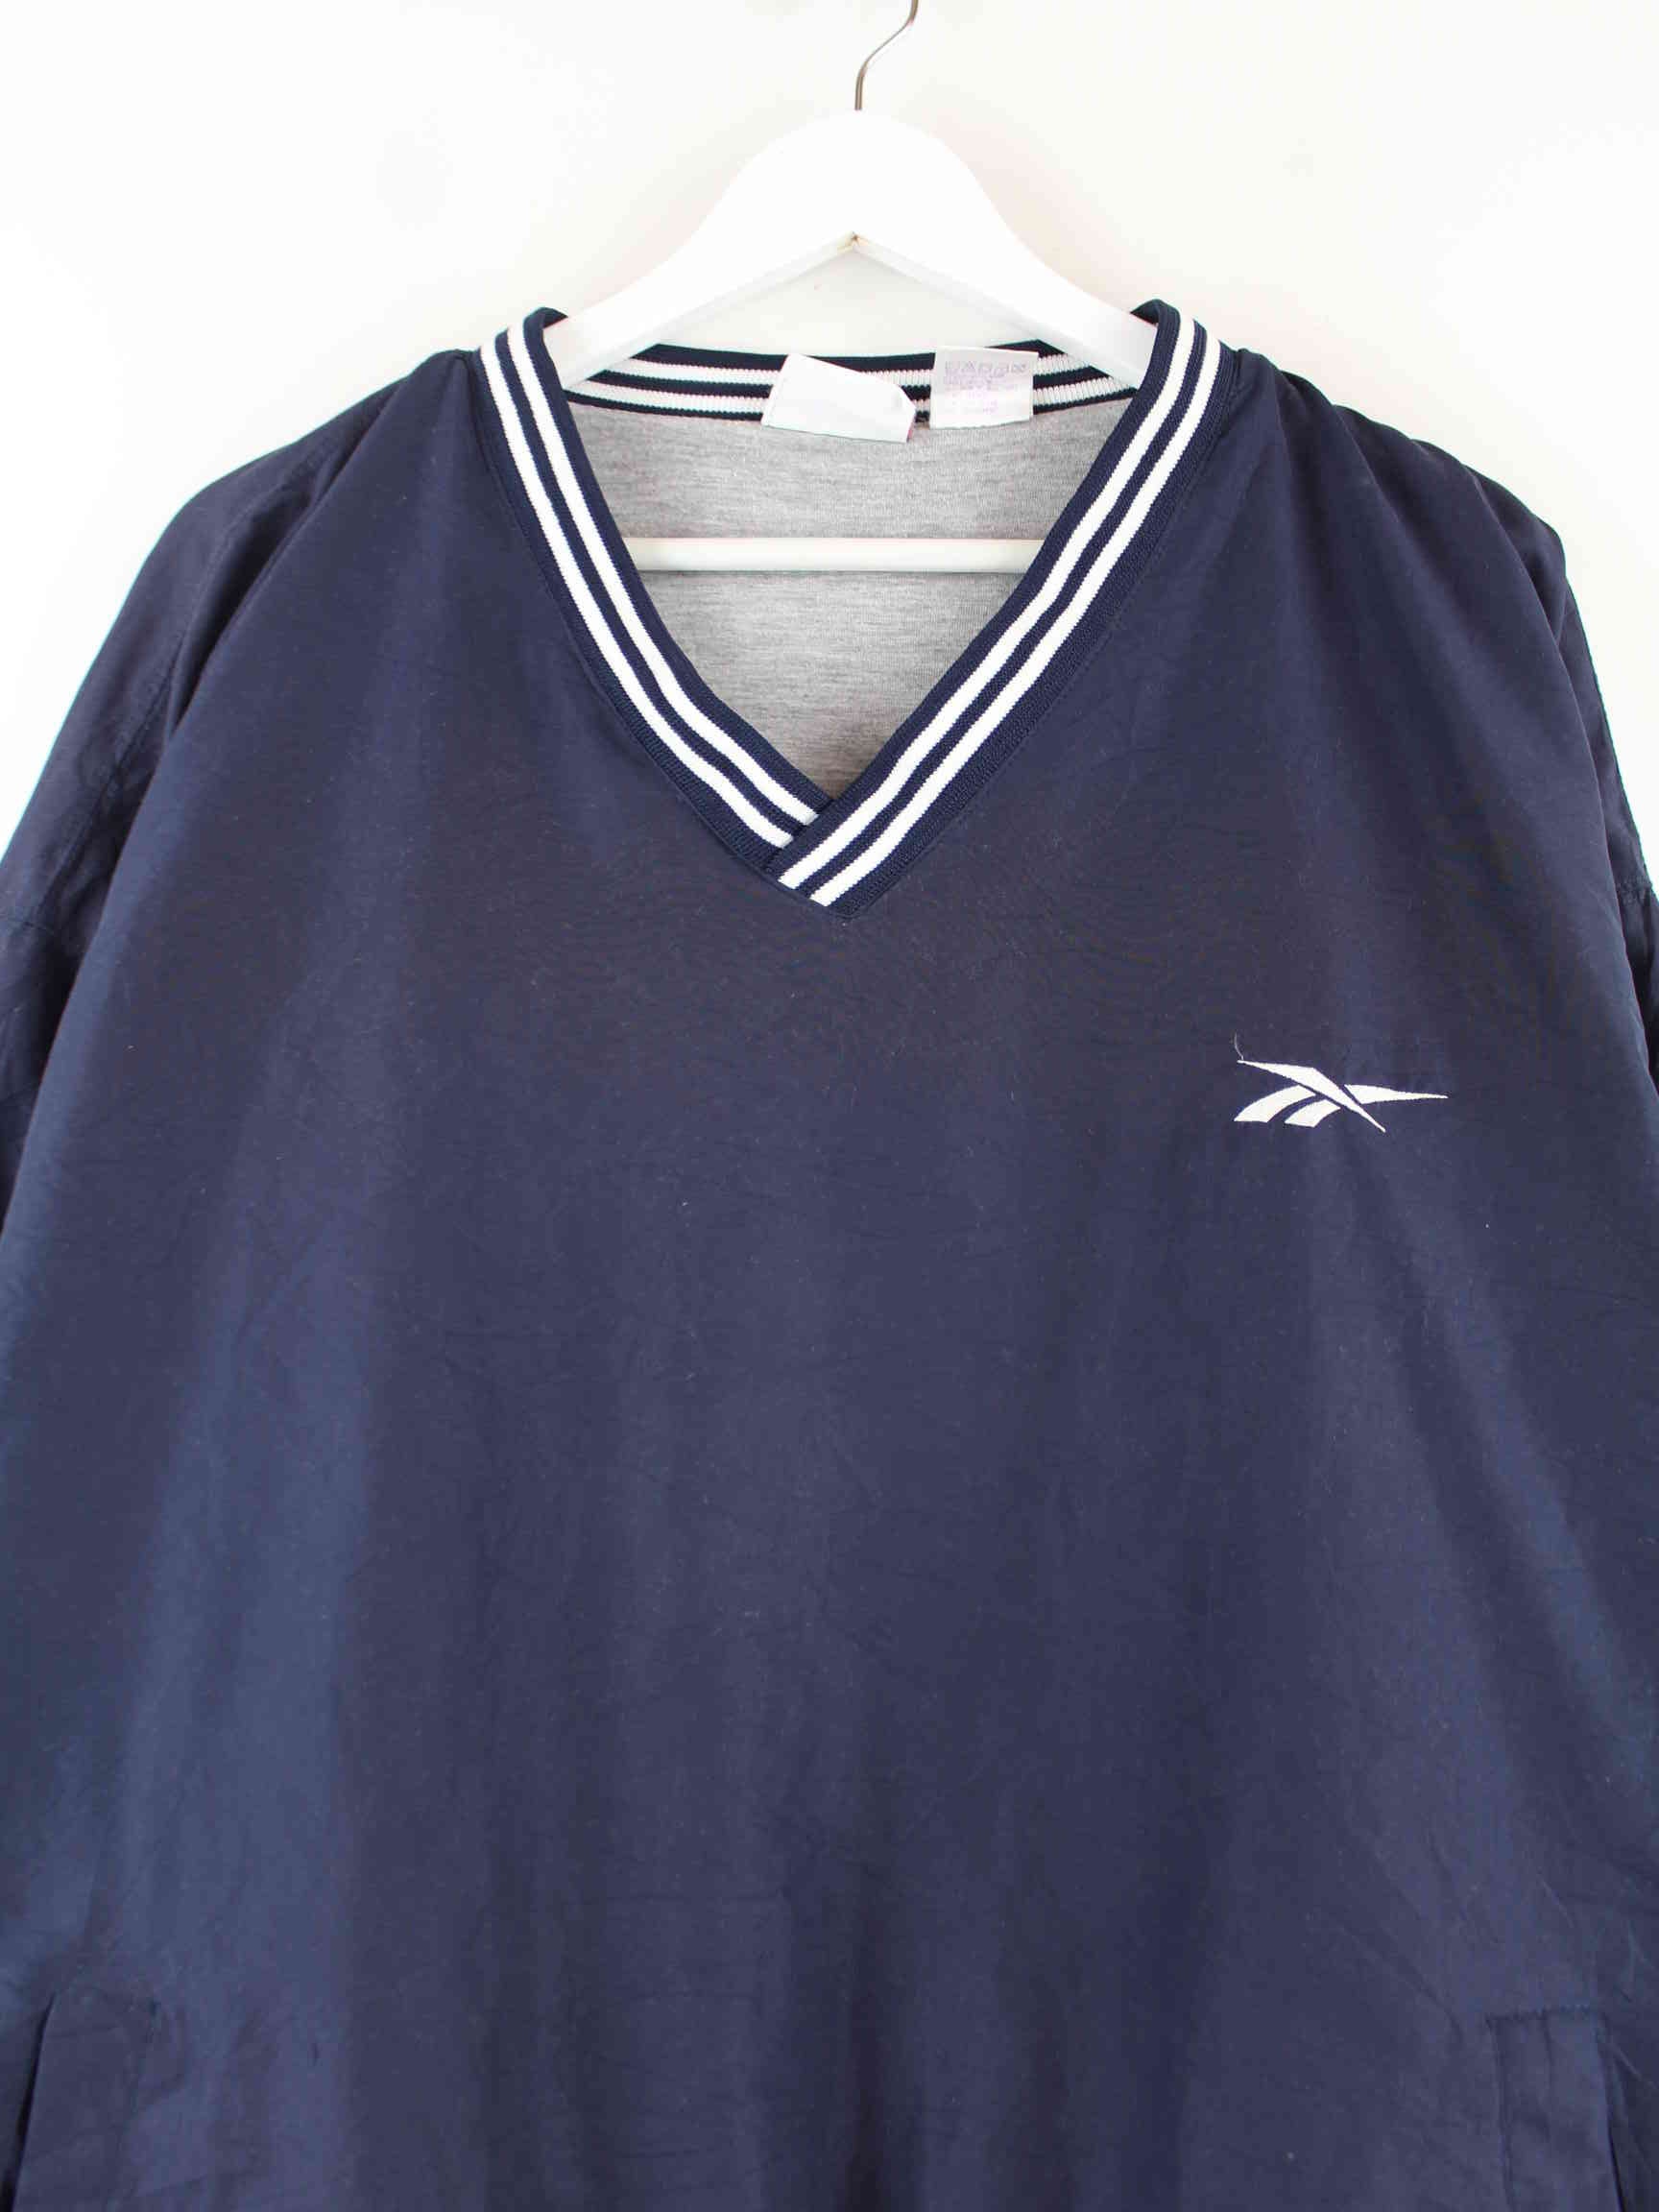 Reebok 90s Vintage V-Neck Track Top Sweater Blau XL (detail image 1)